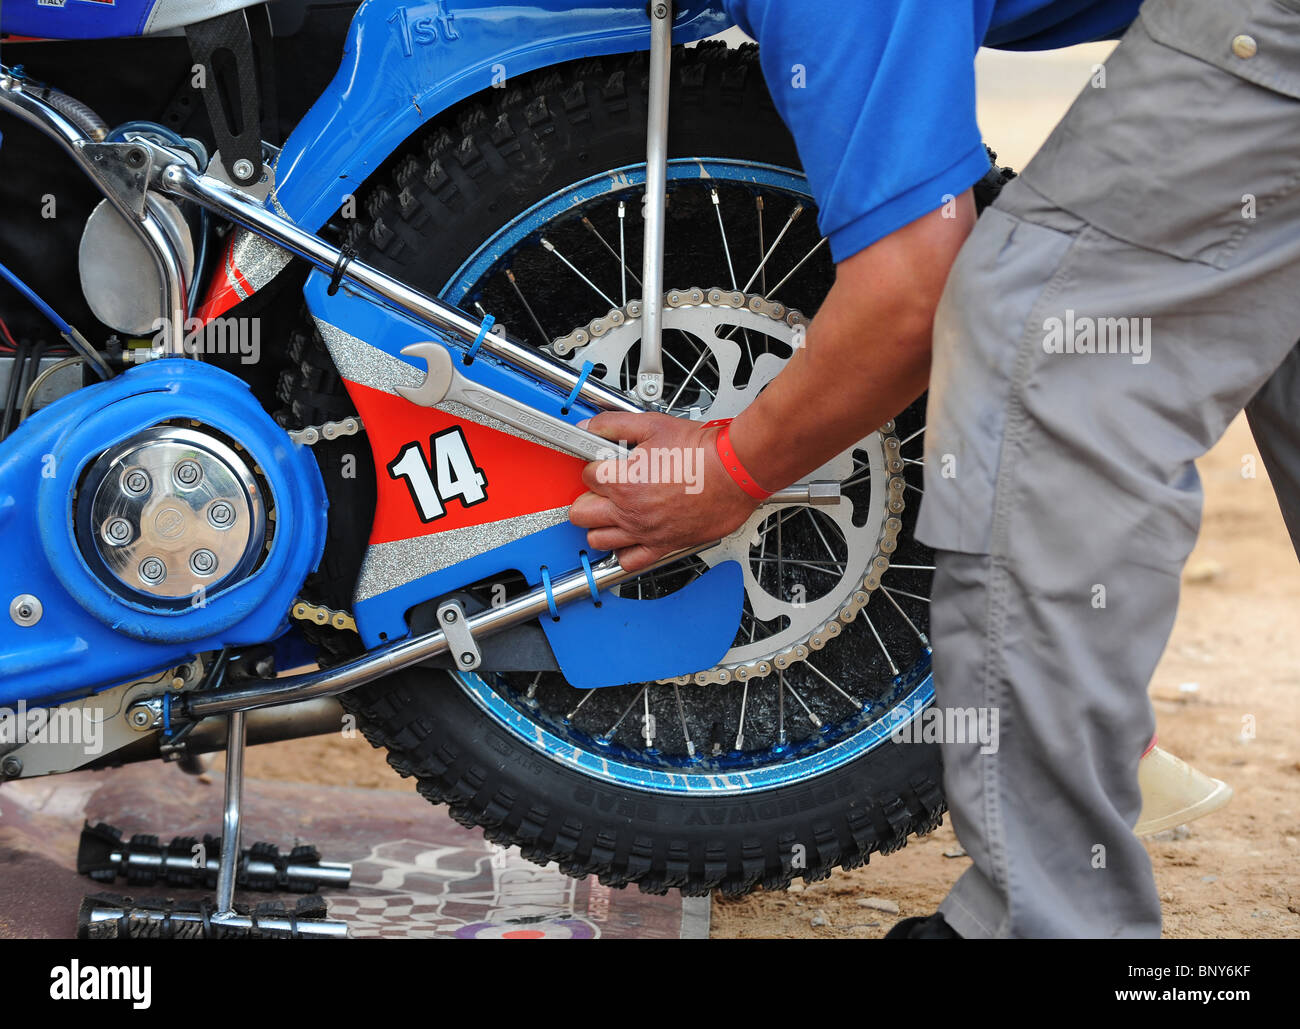 Ein Speedway-Motorrad wird von einem Mechaniker in der Box bearbeitet Stockfoto